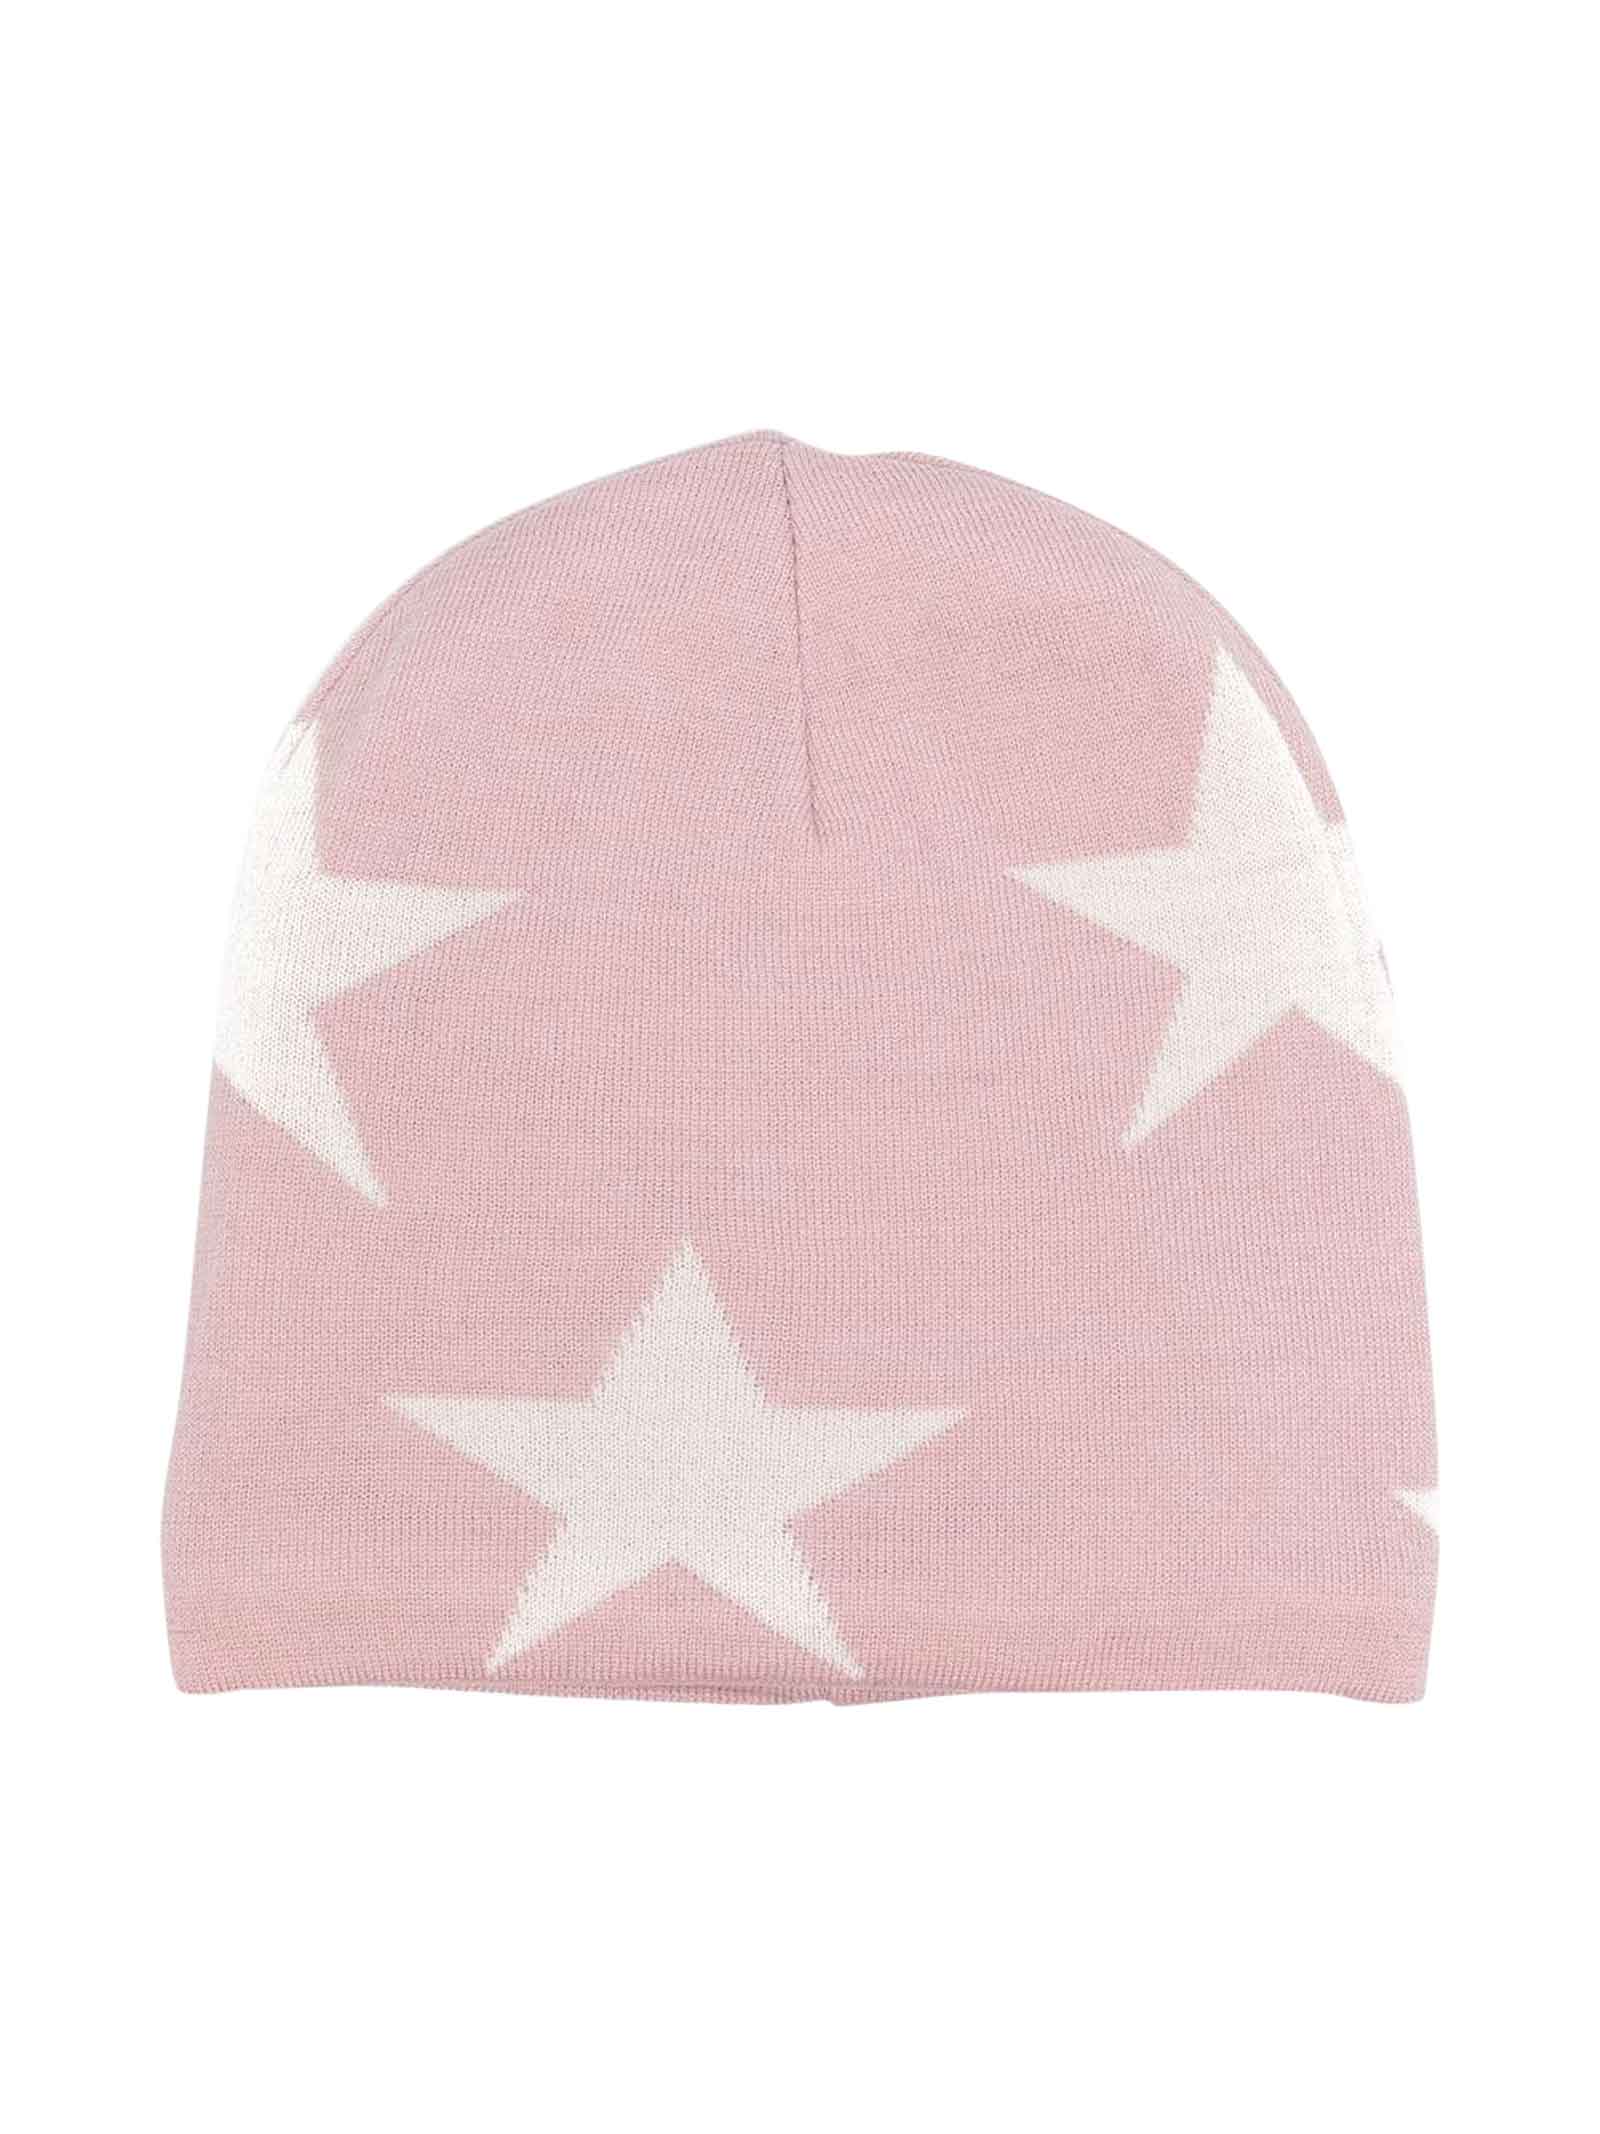 Molo Kids Pink Cap